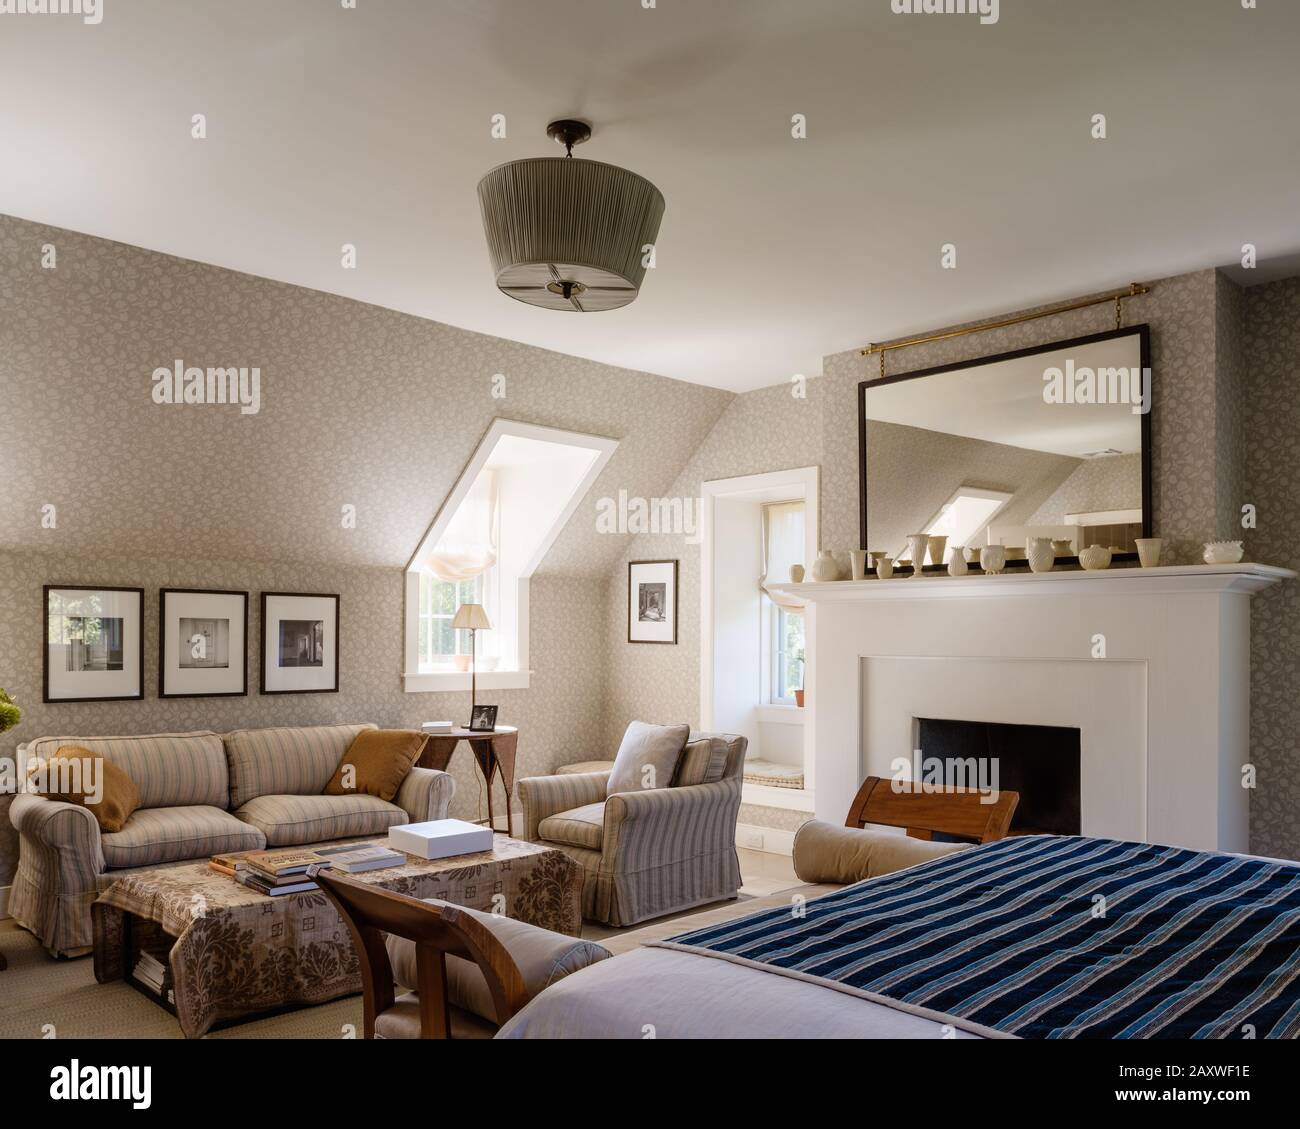 Zimmer im Landhausstil mit Kamin Stockfoto